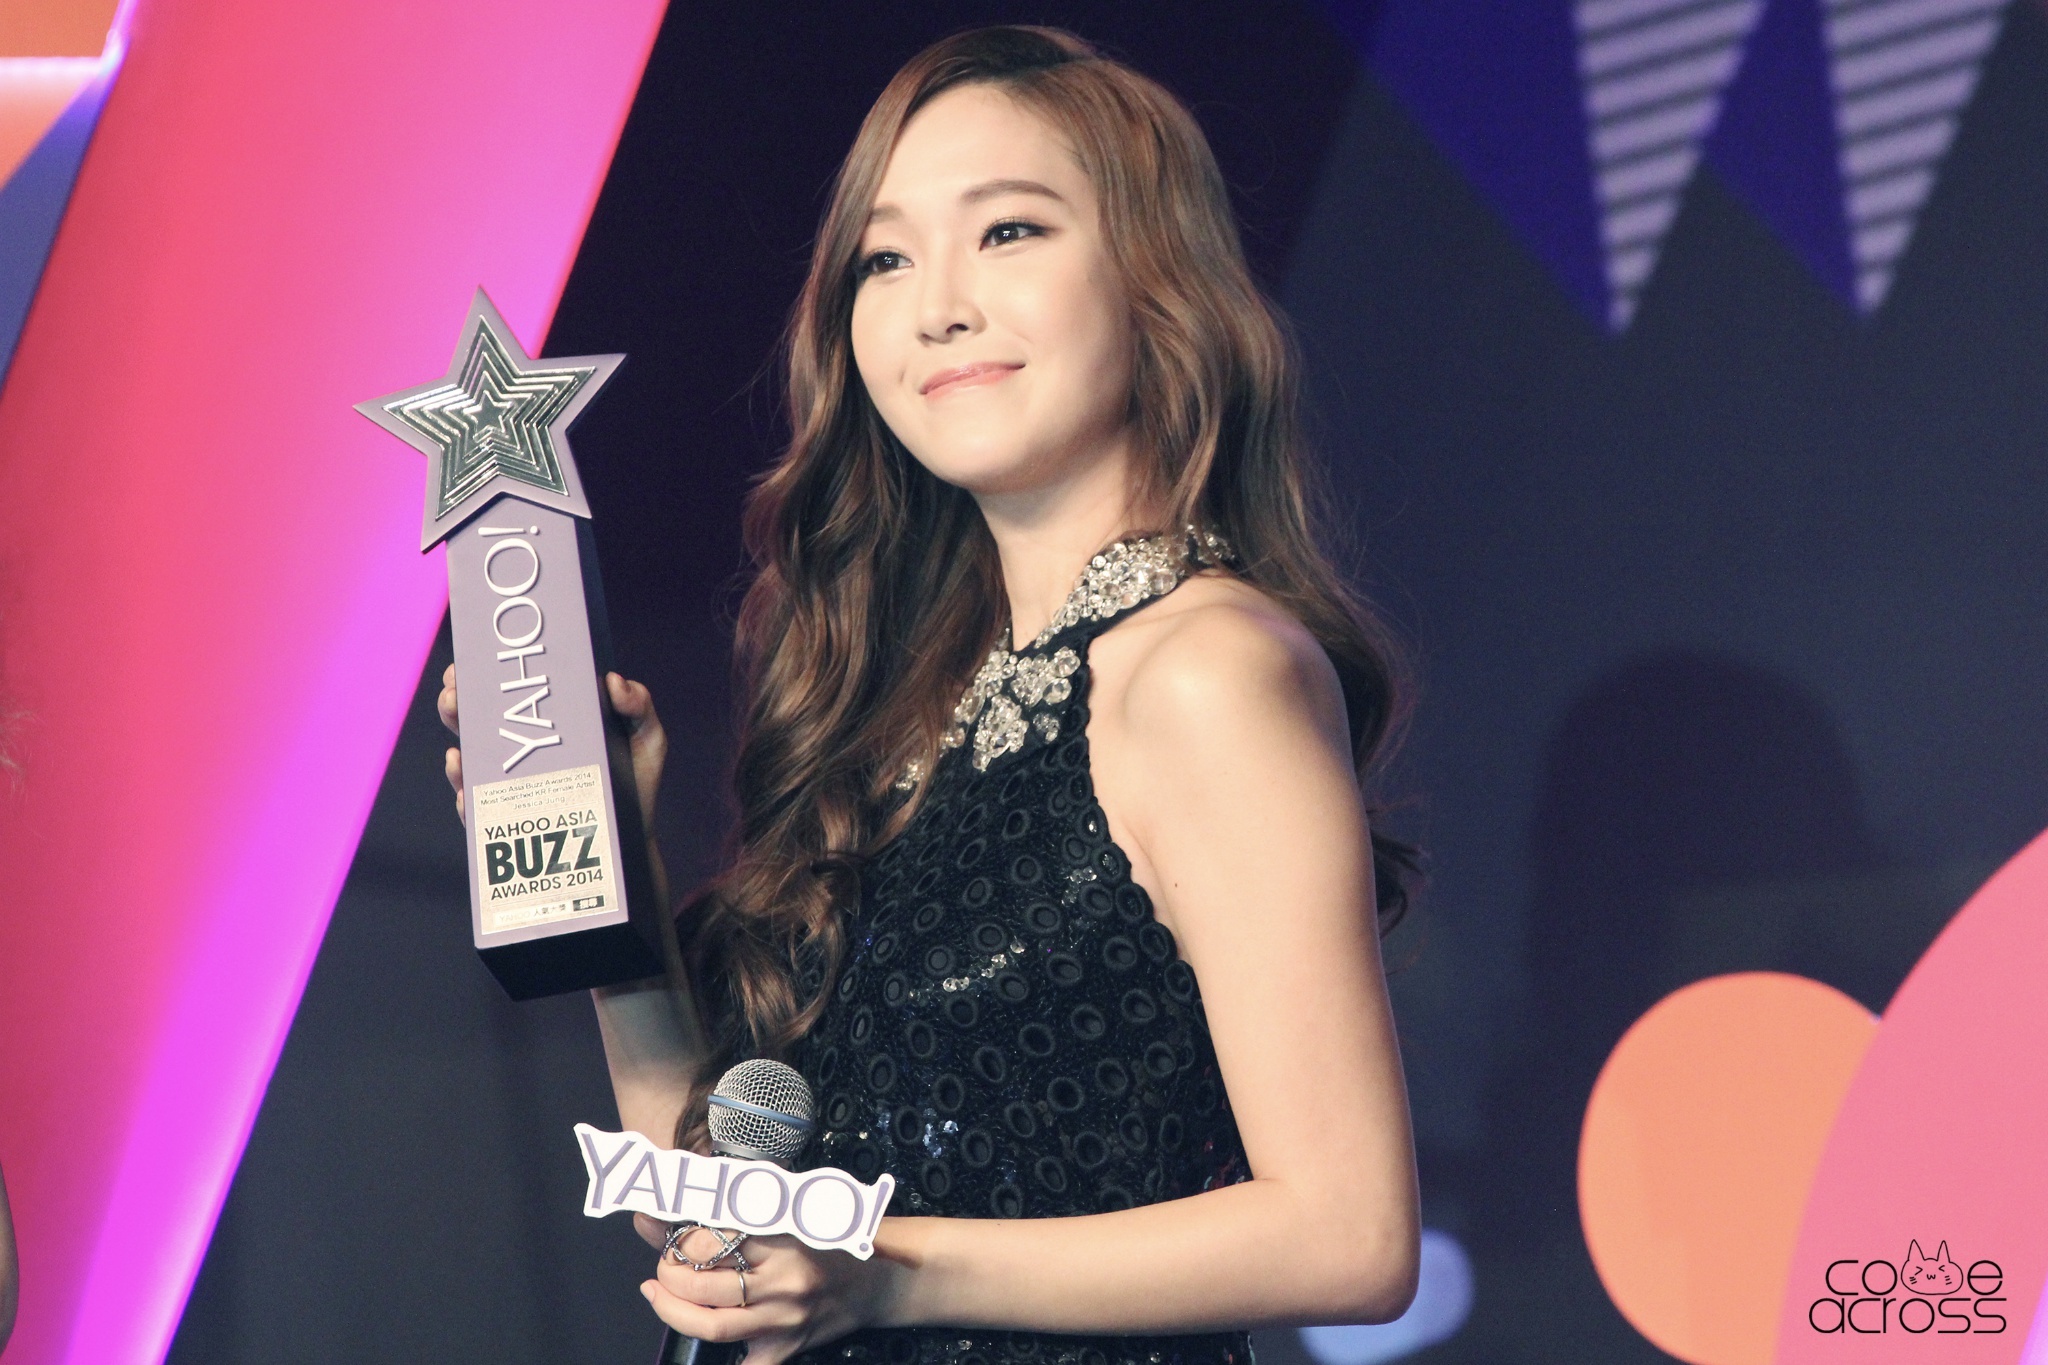 [PIC][07-12-2014]Jessica khởi hành đi Hồng Kông để tham dự "Yahoo Asia Buzz Award 2014" vào sáng nay - Page 3 005OstHlgw1en5ynn9ad5j31kw11x7qb